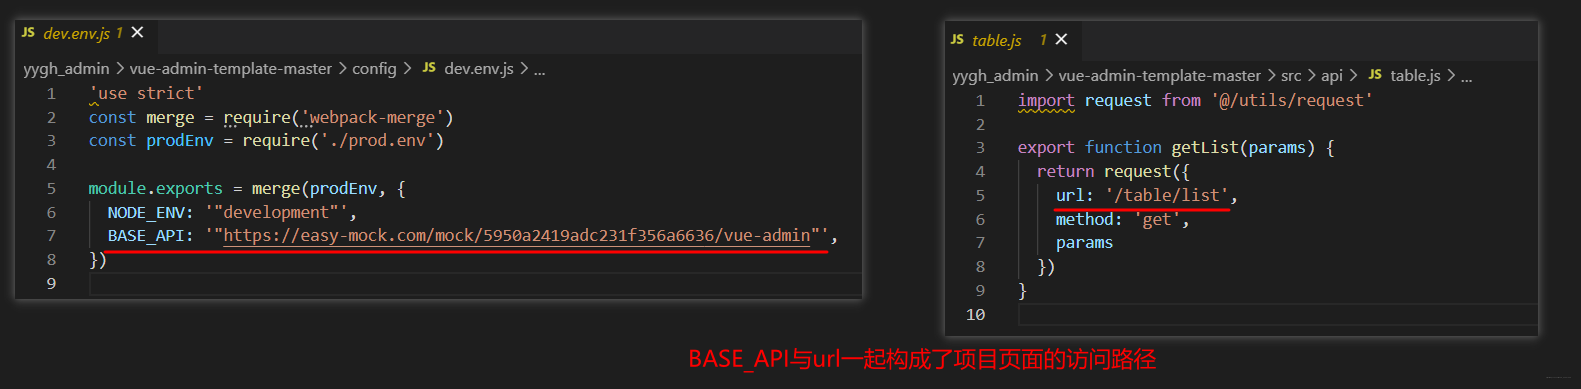 BASE_API与url一起构成页面的访问路径